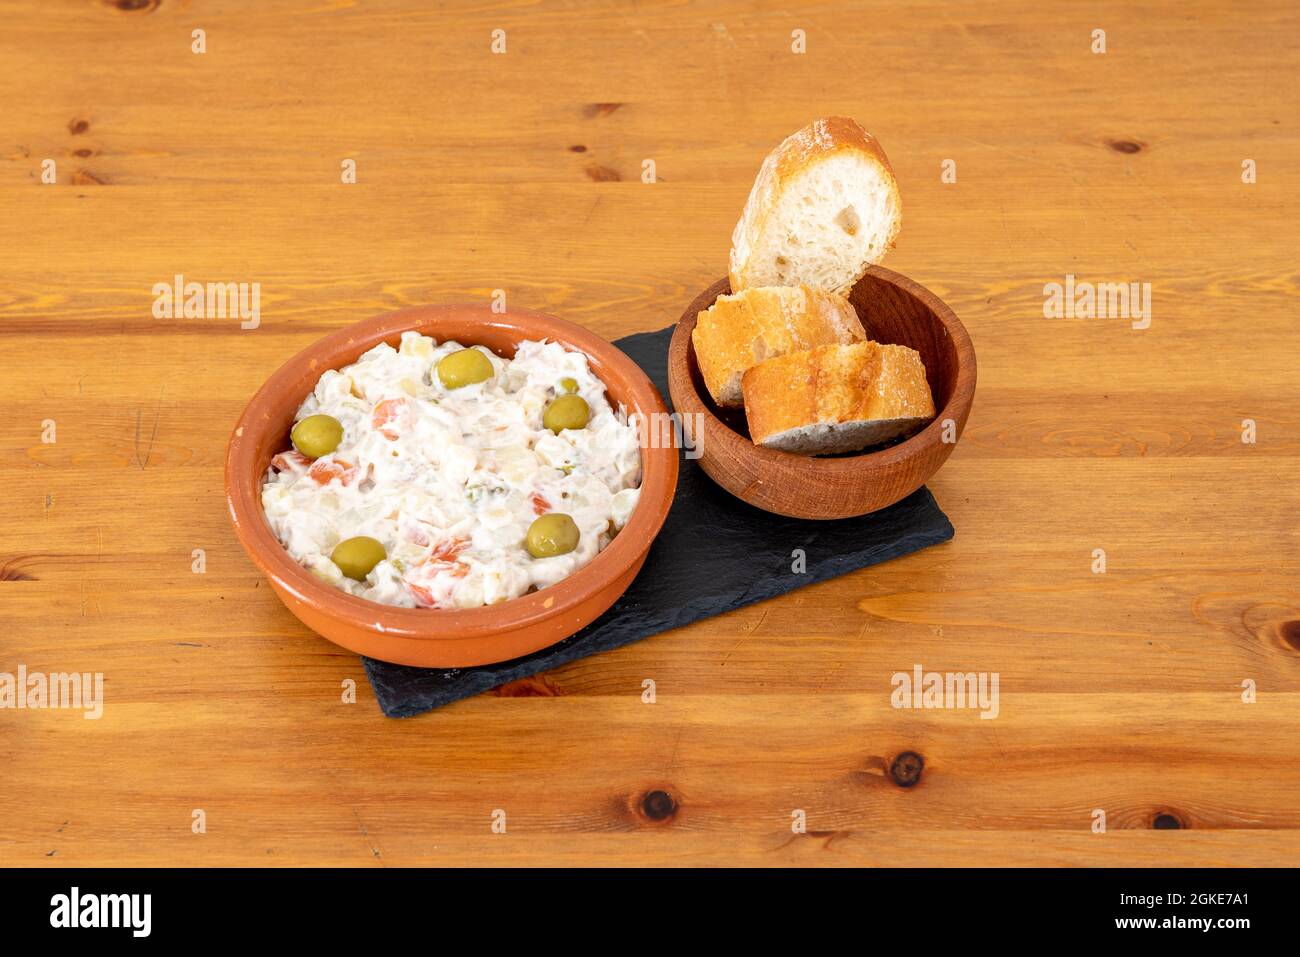 Dessus de salade russe aux olives avec un bol de pain sur une table en bois Banque D'Images